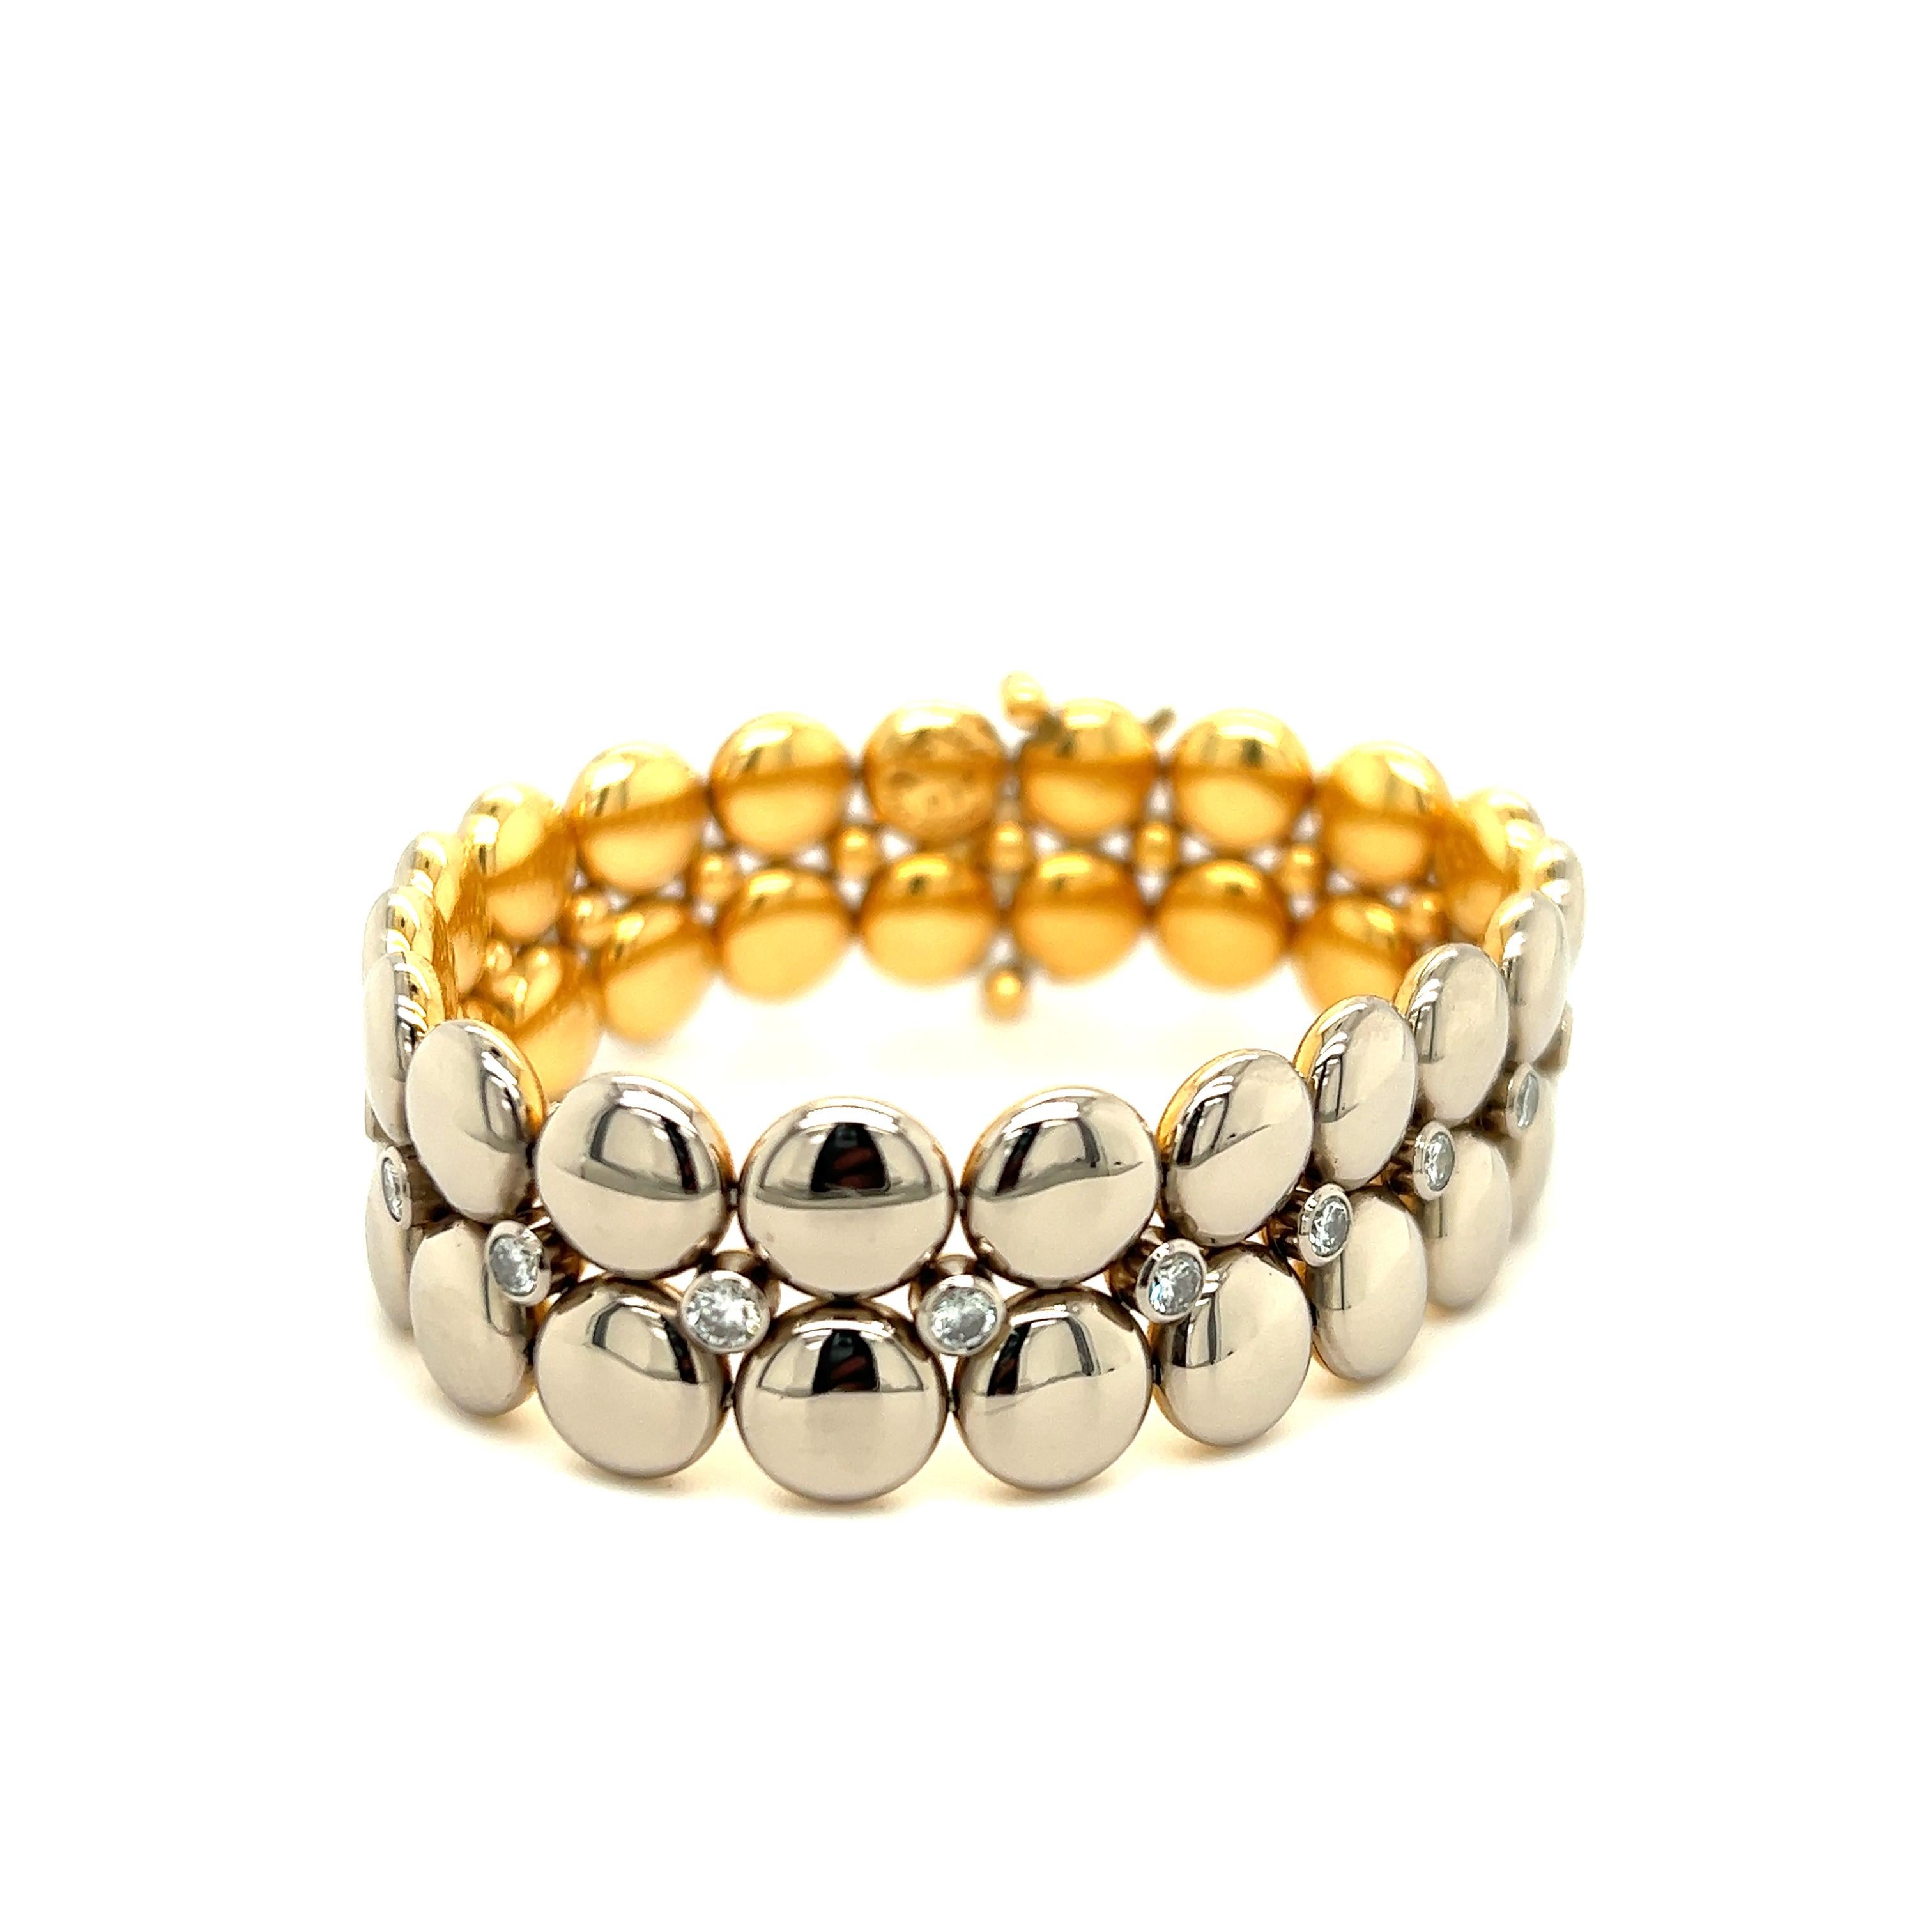 Un design fabuleux de la célèbre maison de joaillerie Cartier. Ce bracelet, issu de la collection Honeymoon, est fabriqué en or massif 18 carats. Le bracelet a un design unique car il est réversible.  Une face est réalisée en or jaune et l'autre en